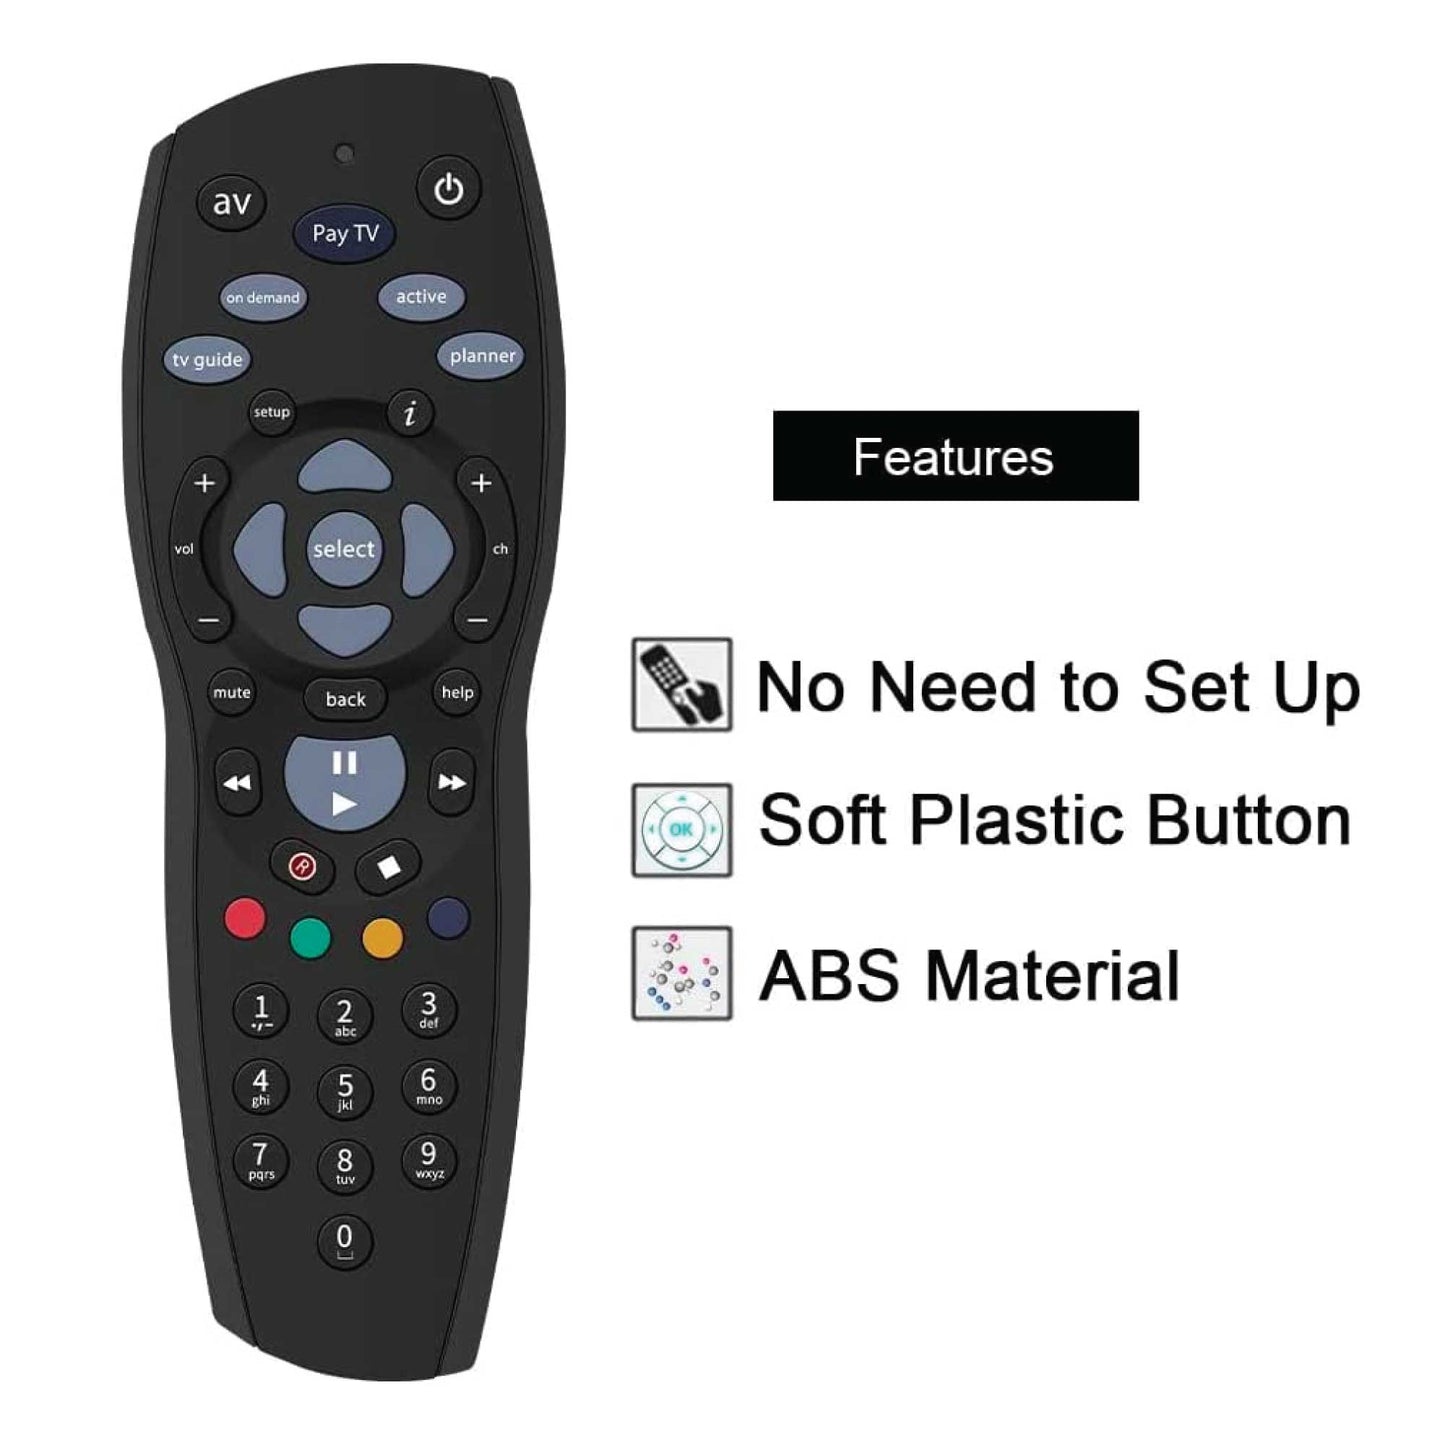 PayTV Remote Control Compatible with Foxtel Standard IQ IQ2 IQ3 IQ4 HD - Black